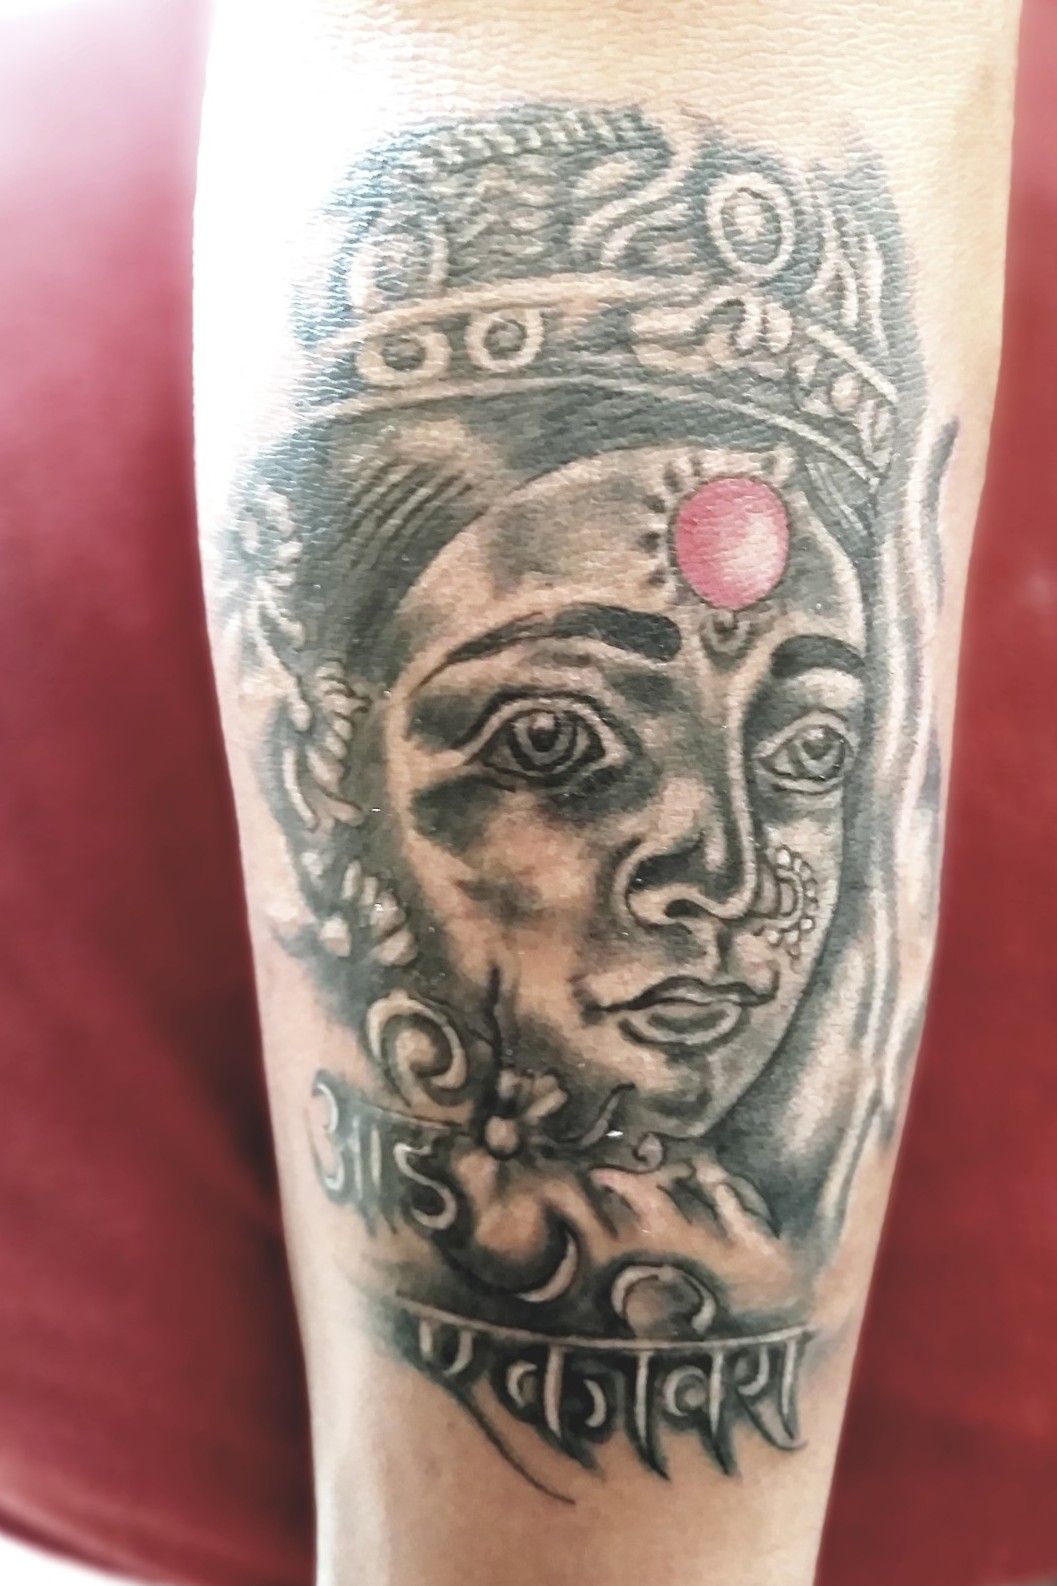 Mahesh Chavan  Aaie Ekveera portrait tattoo by  themustachetattoo  navimumbai koperkhaiarane Studio Wwwthemustachetattoocom Contact no   9819081645 any appointment ekveeraaai ekveera ekveeradevi god devi  indiangod indiandevi 